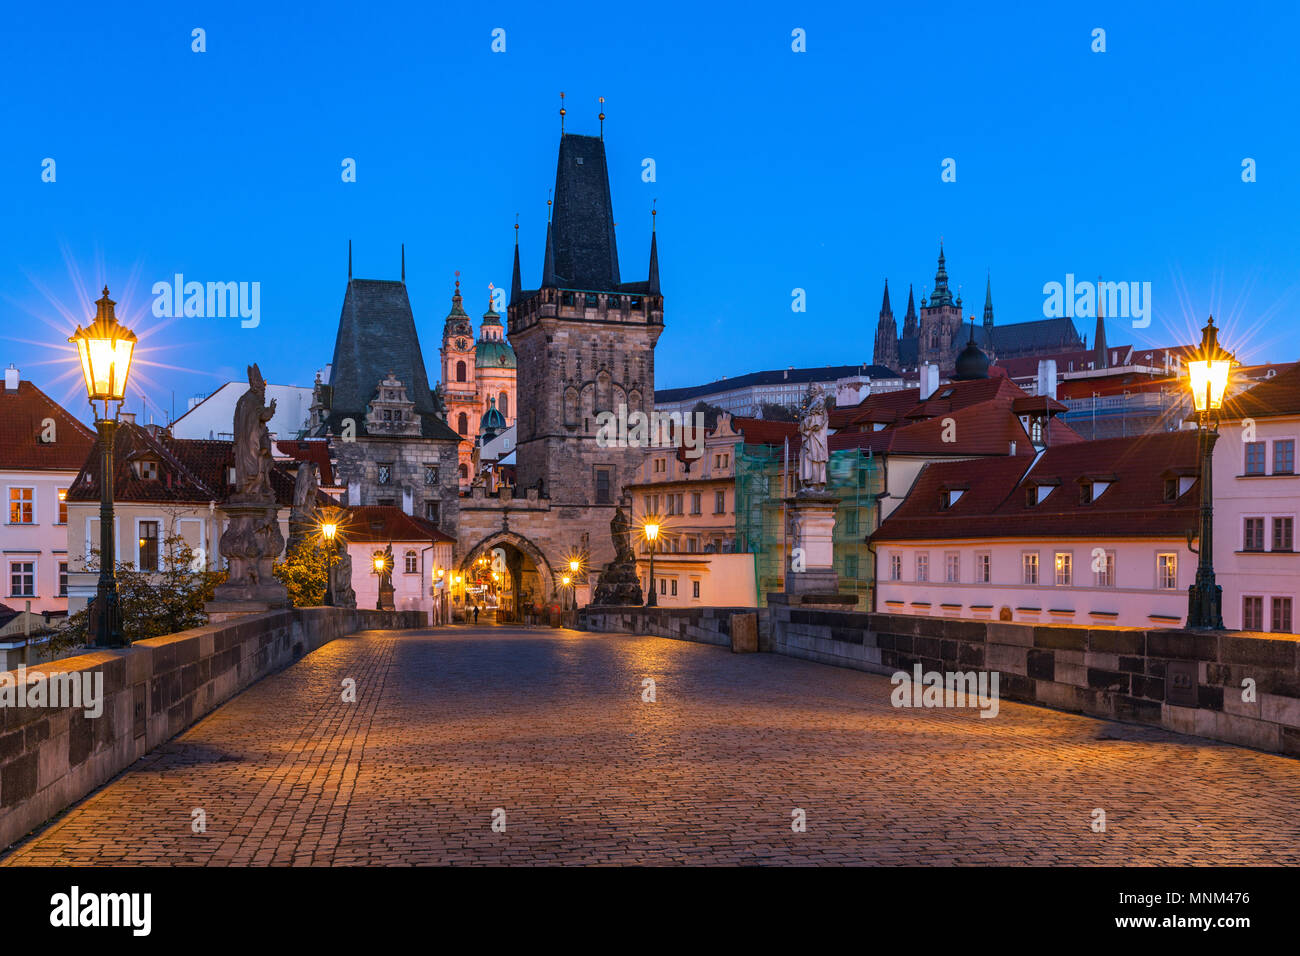 Berühmte ikonische Bild von der Karlsbrücke, Prag, Tschechische Republik. Konzept der Welt reisen, Sehenswürdigkeiten und Tourismus. Stockfoto